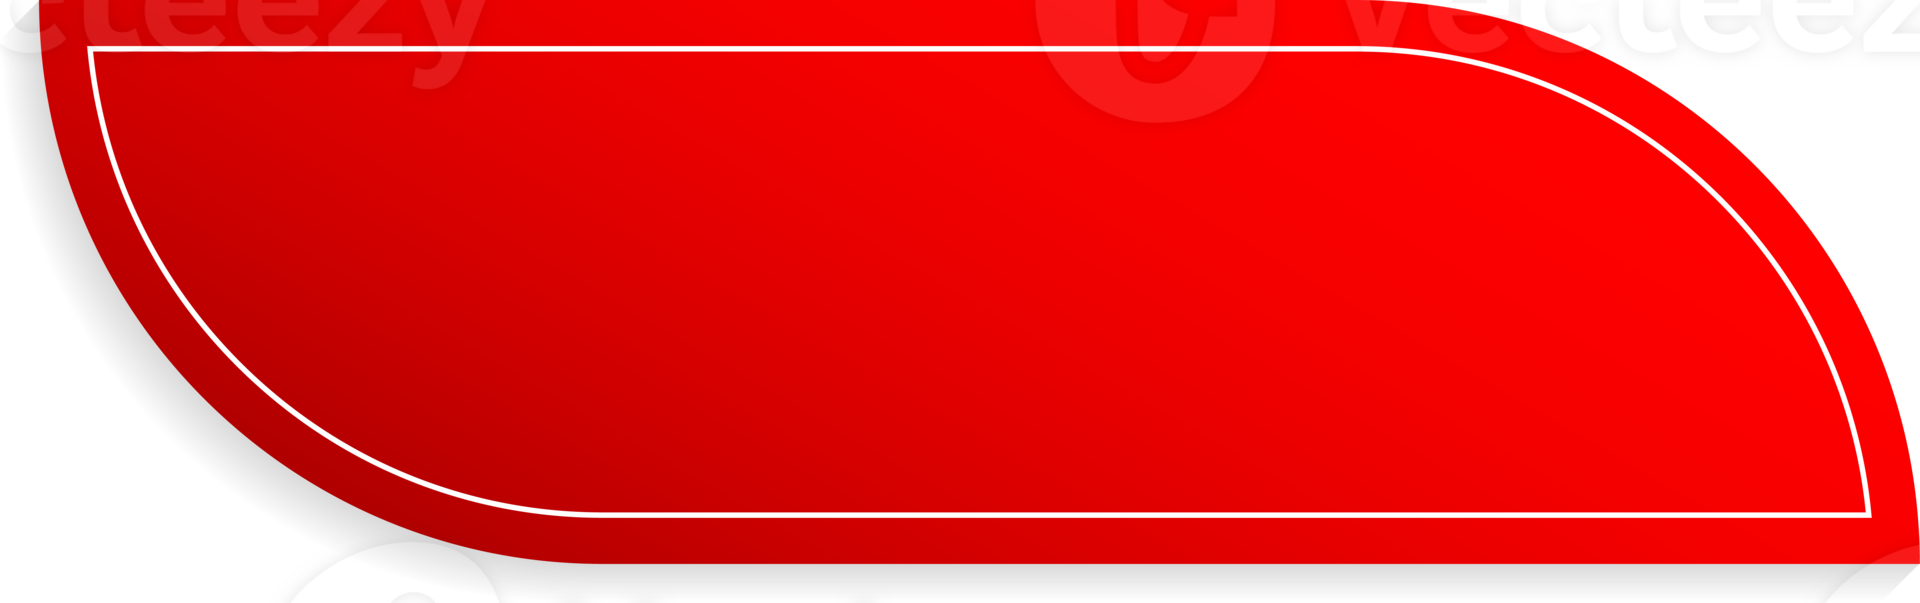 rosso lucido etichette etichetta per vendita prezzo lusso moderno design png